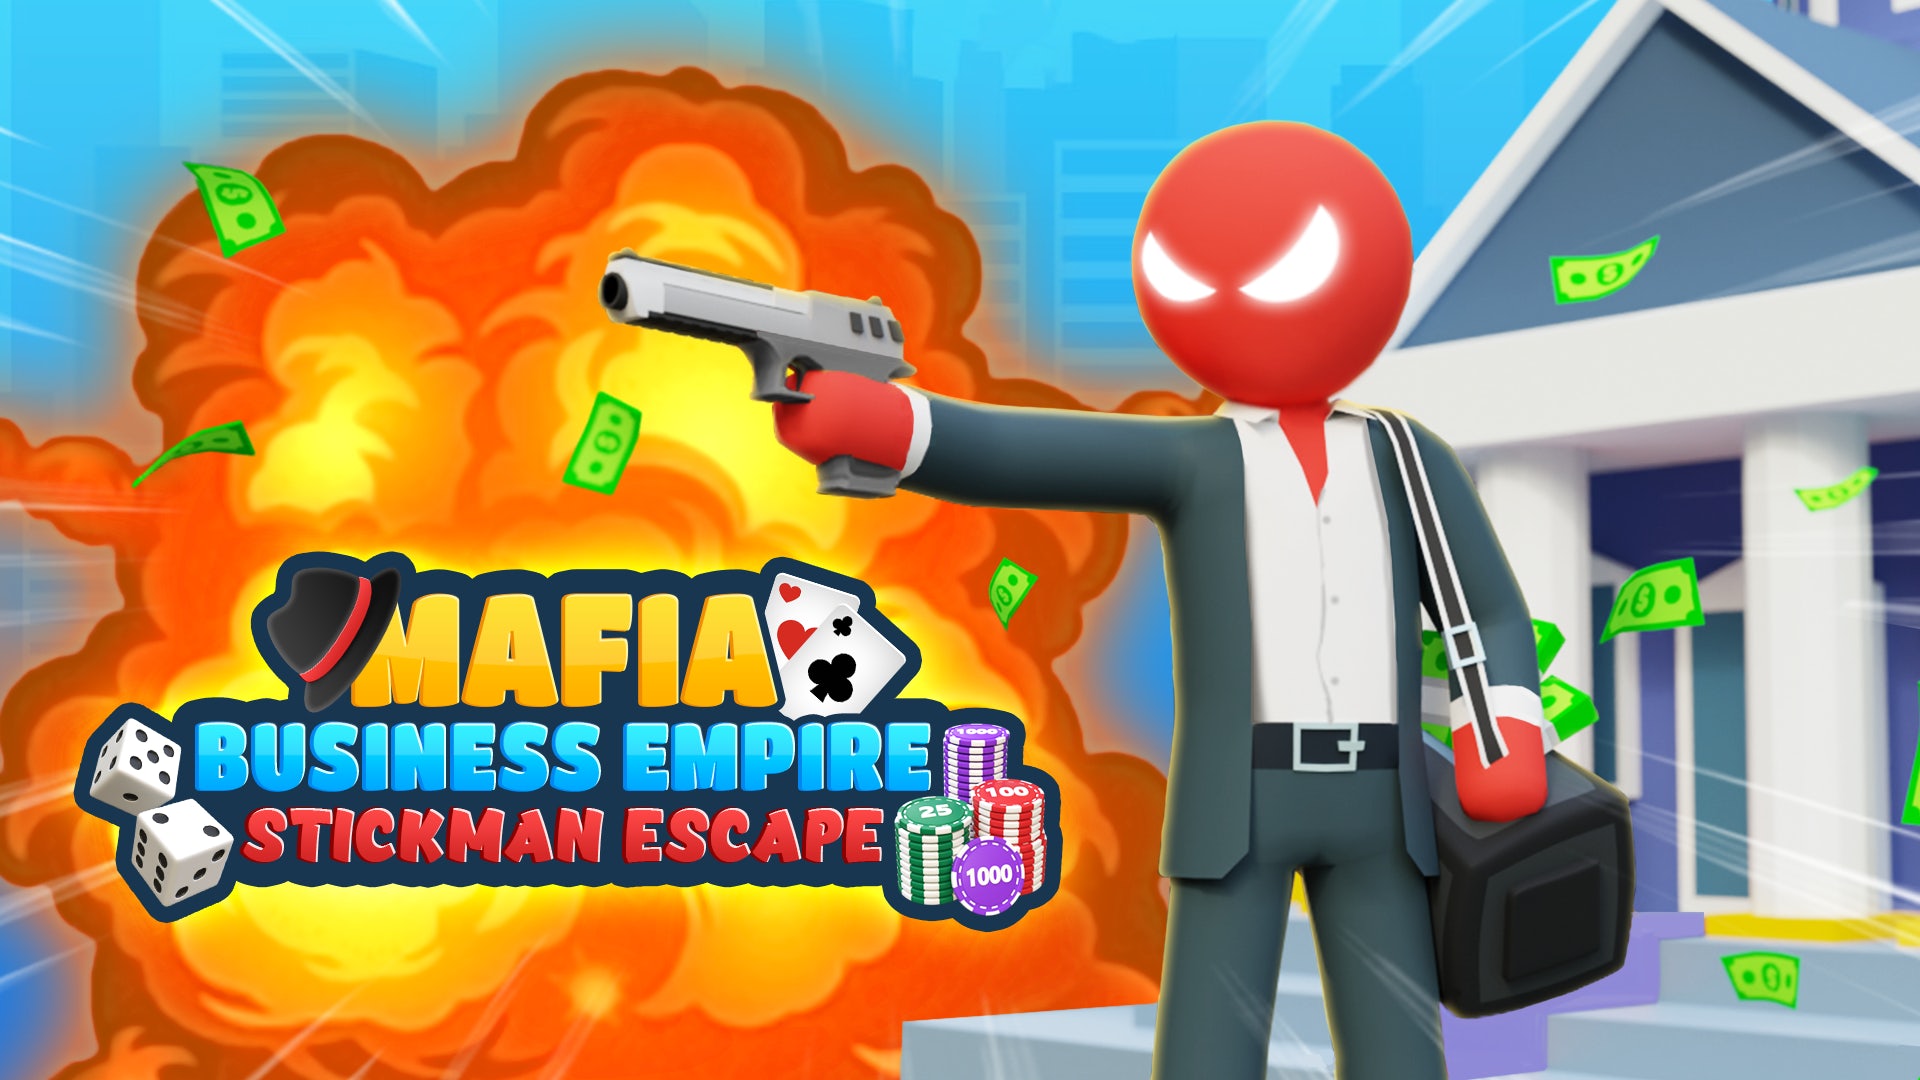 Mafia Business Empire: Stickman Escape